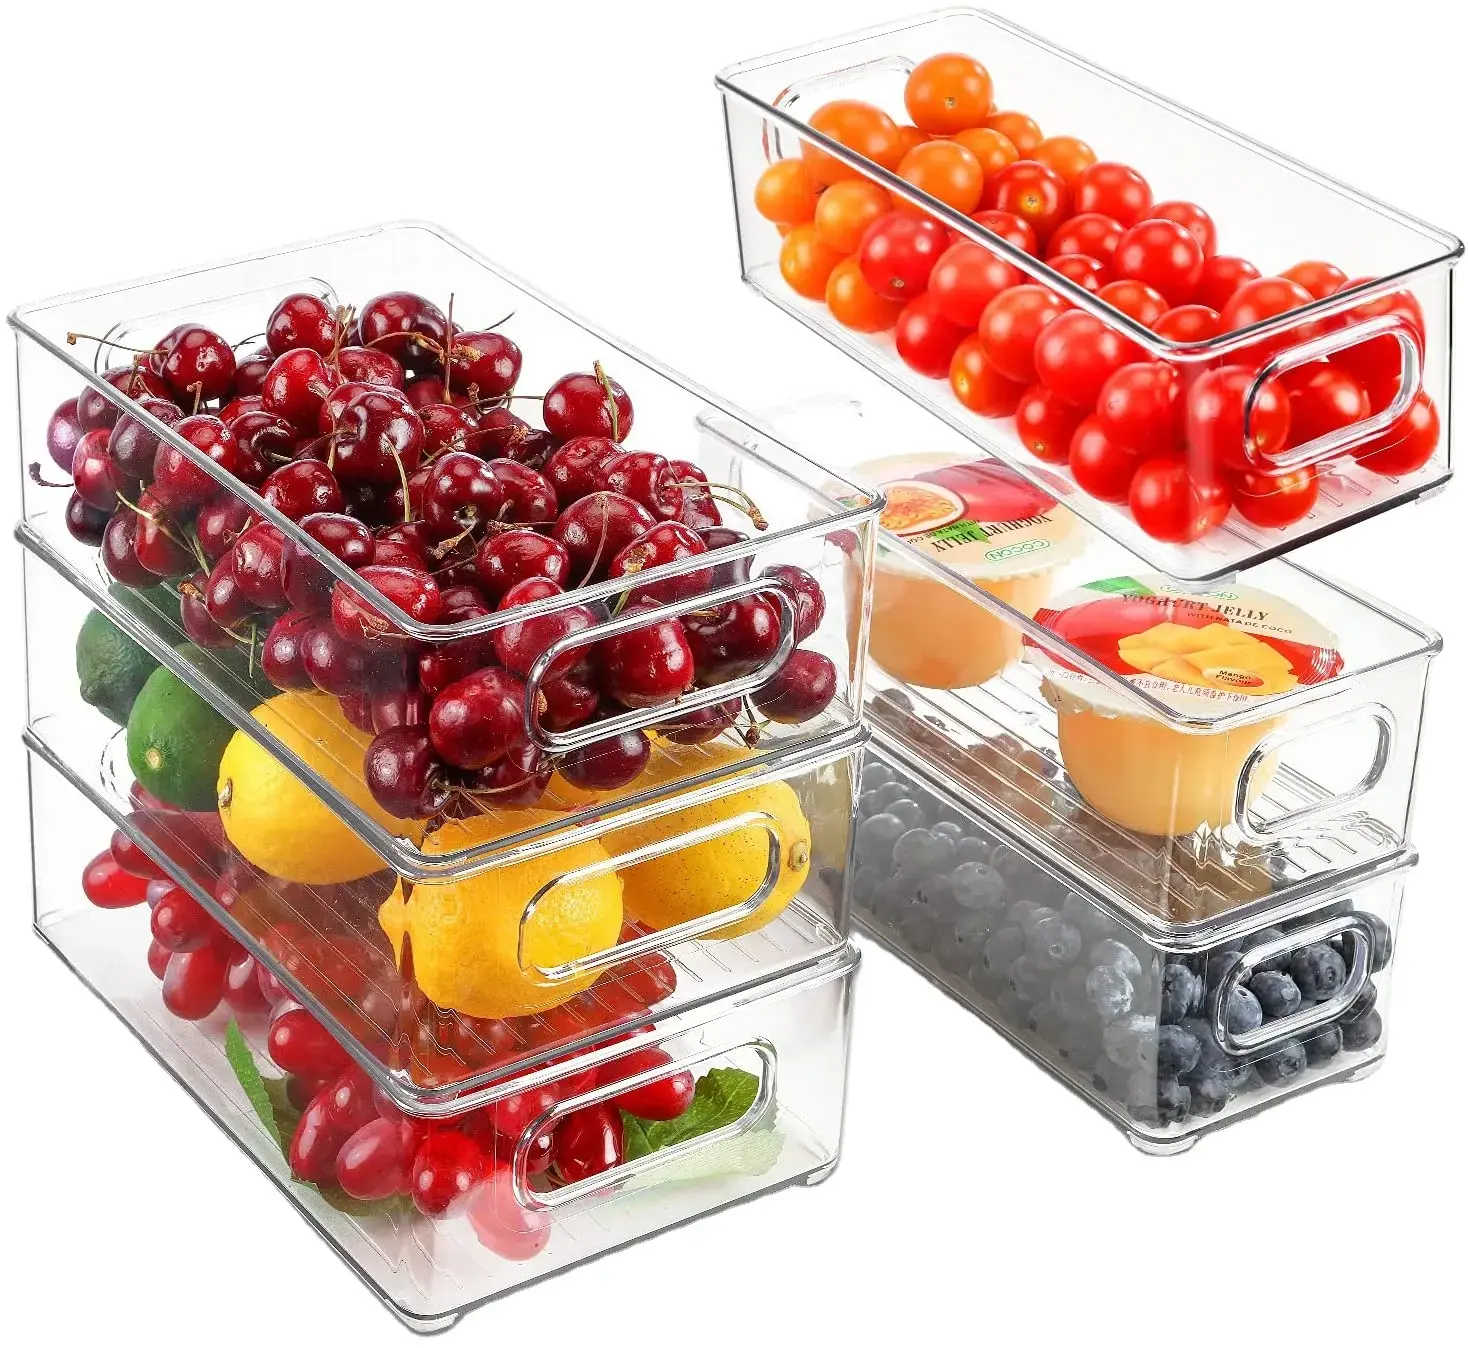 Réfrigérateur organisateur conteneurs de stockage boîte alimentaire réfrigérateur tiroir organiser boîte garde-manger matériel sûr